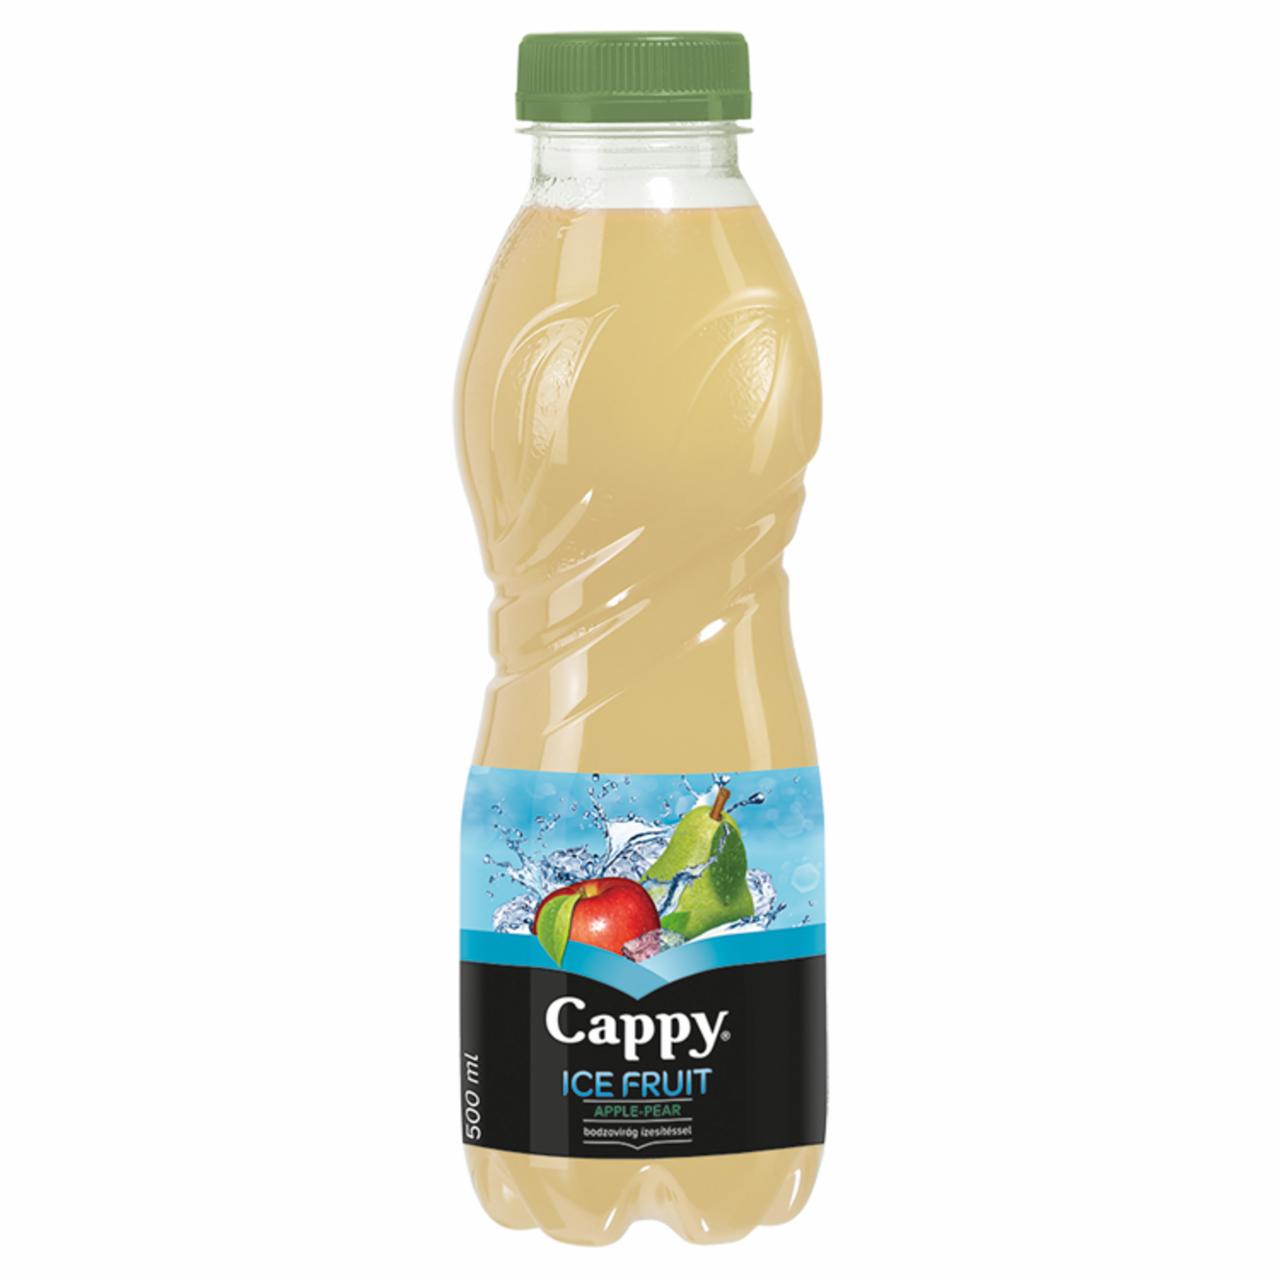 Képek - Cappy Ice Fruit szénsavmentes alma-körte ital bodzavirág ízesítéssel 500 ml